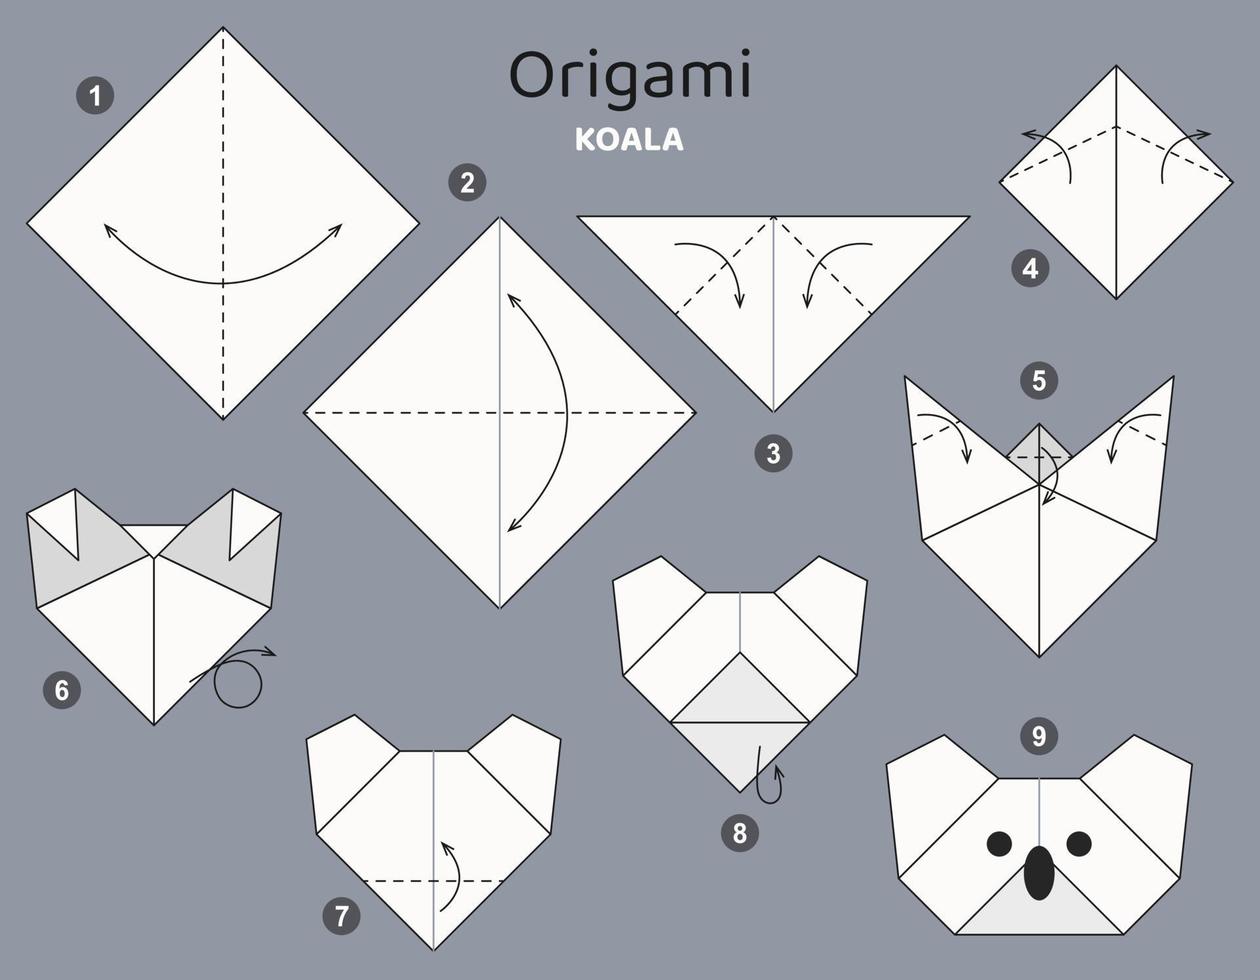 esquema de origami de coala tutorial. elementos de origami isolados em pano de fundo cinza. origami para crianças. passo a passo como fazer coala de origami. ilustração vetorial. vetor